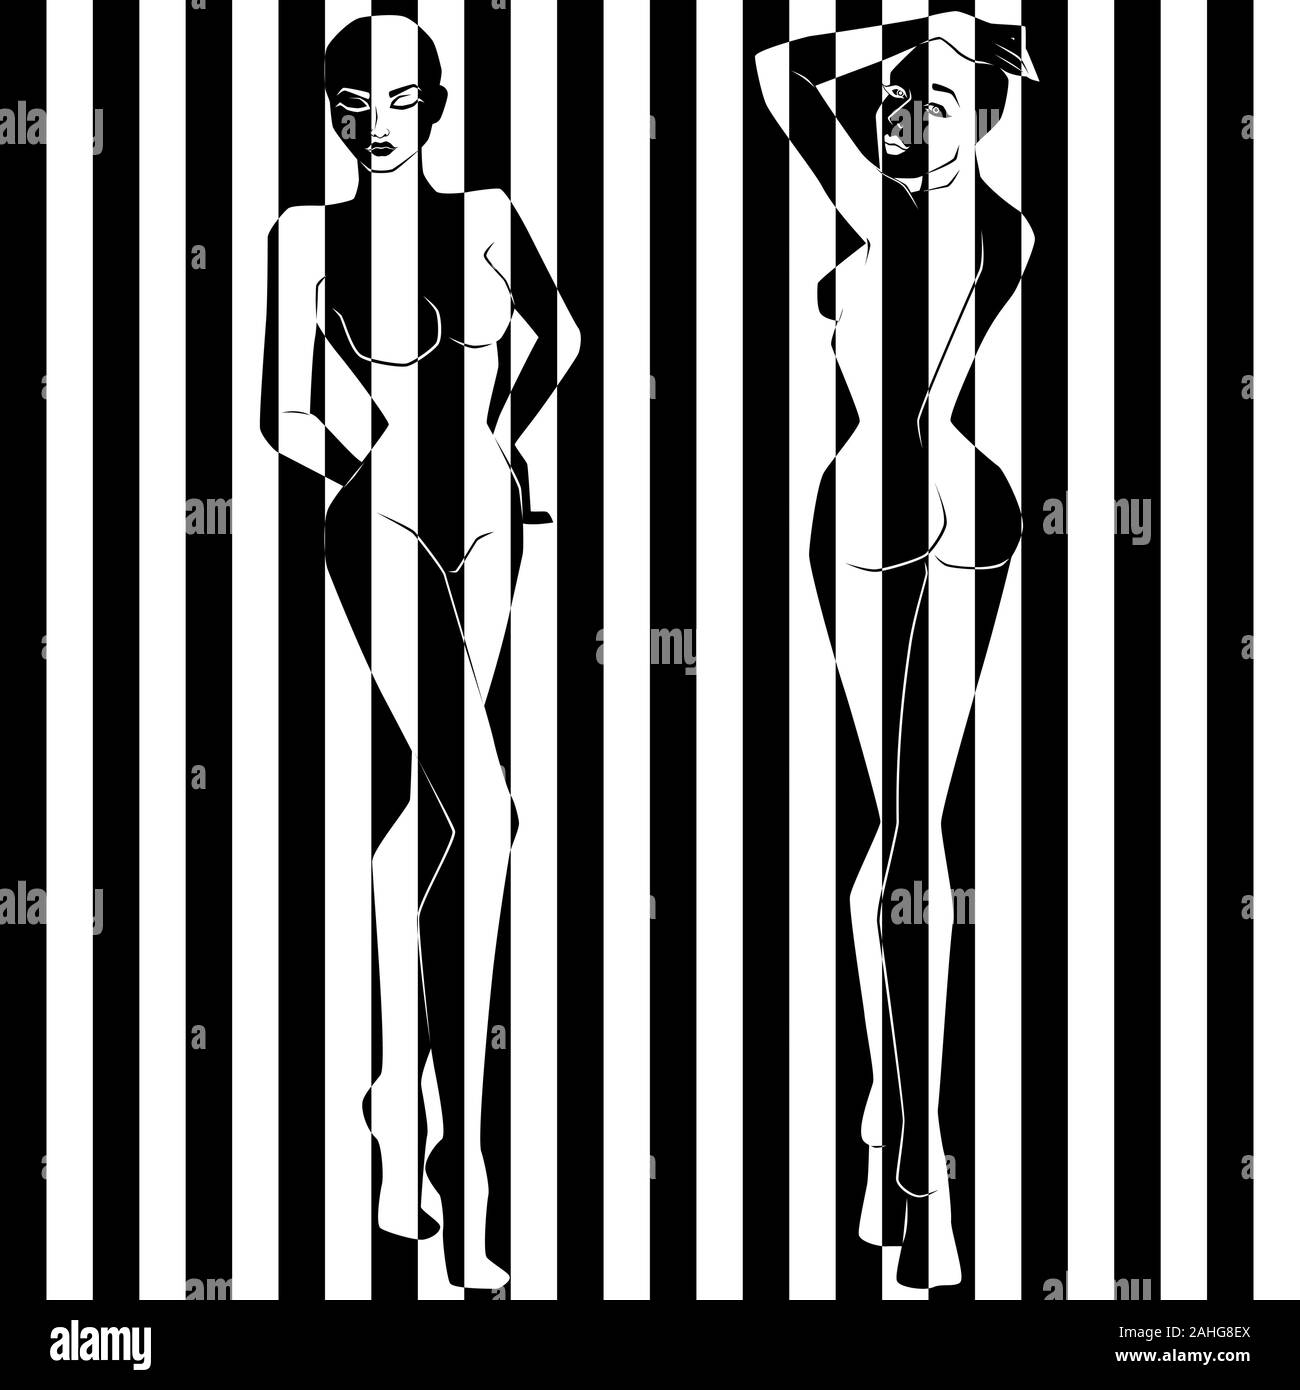 Zusammenfassung von zwei hübschen Frauen auf der Abbildung in schwarz-weiß breite Streifen geteilt, Pseudo-3D-Optik, negative und positive konzeptionelle Ex Stock Vektor